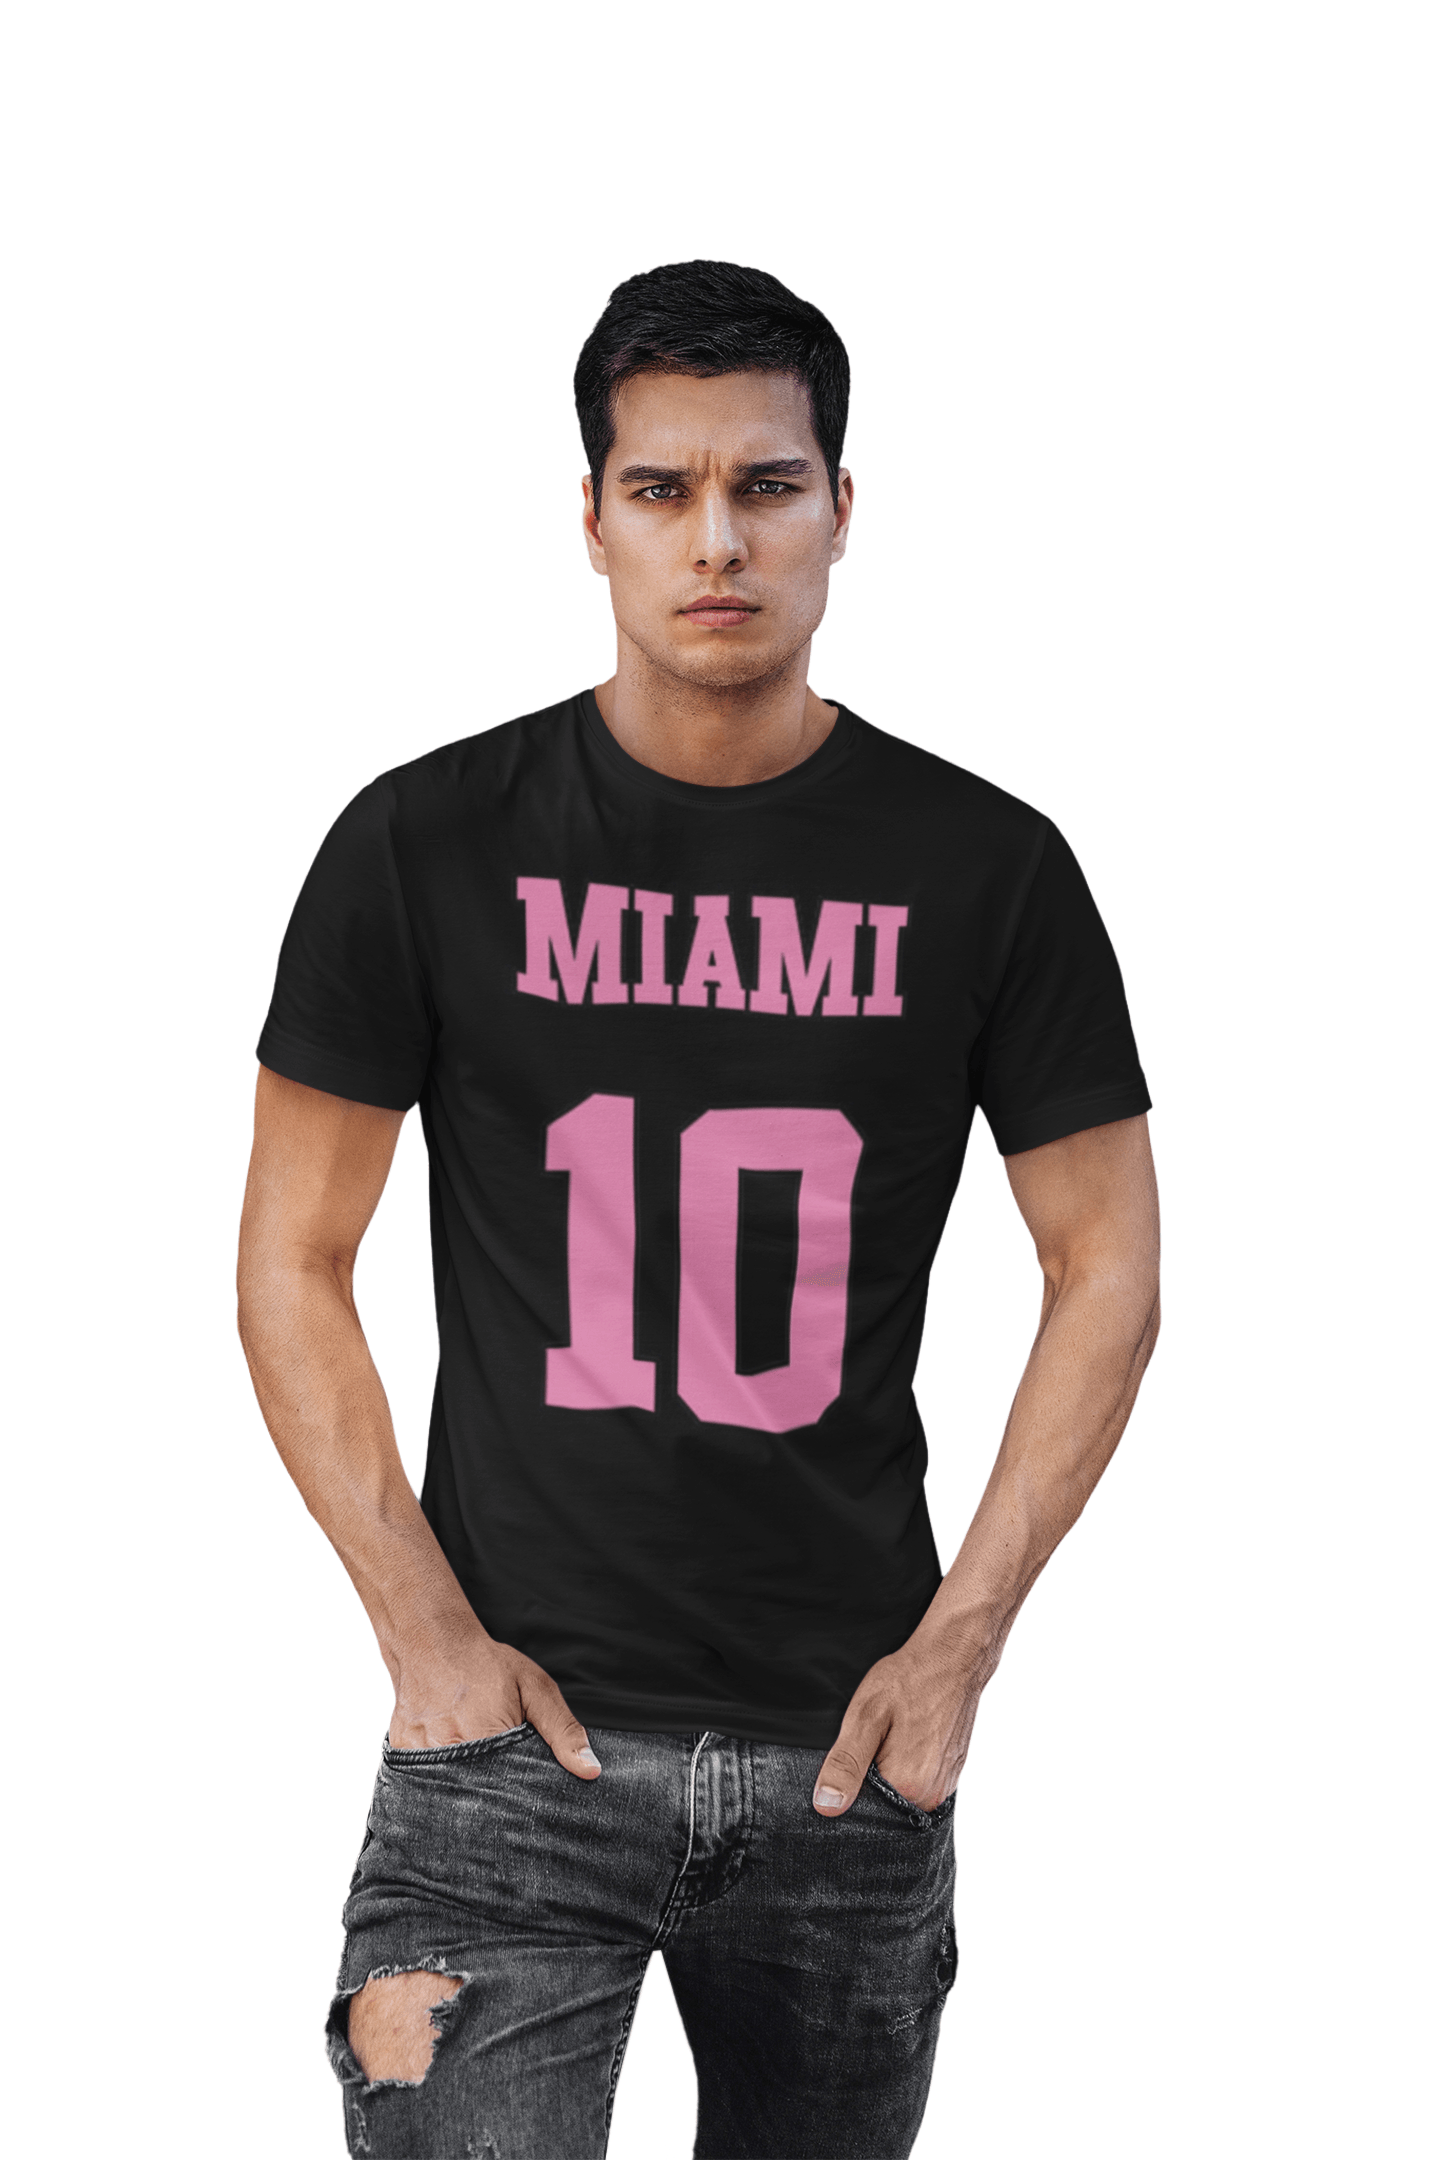 Top Koala Softstyle T-shirt Miami 10 Unisex Short Sleeve Tee - TopKoalaTee